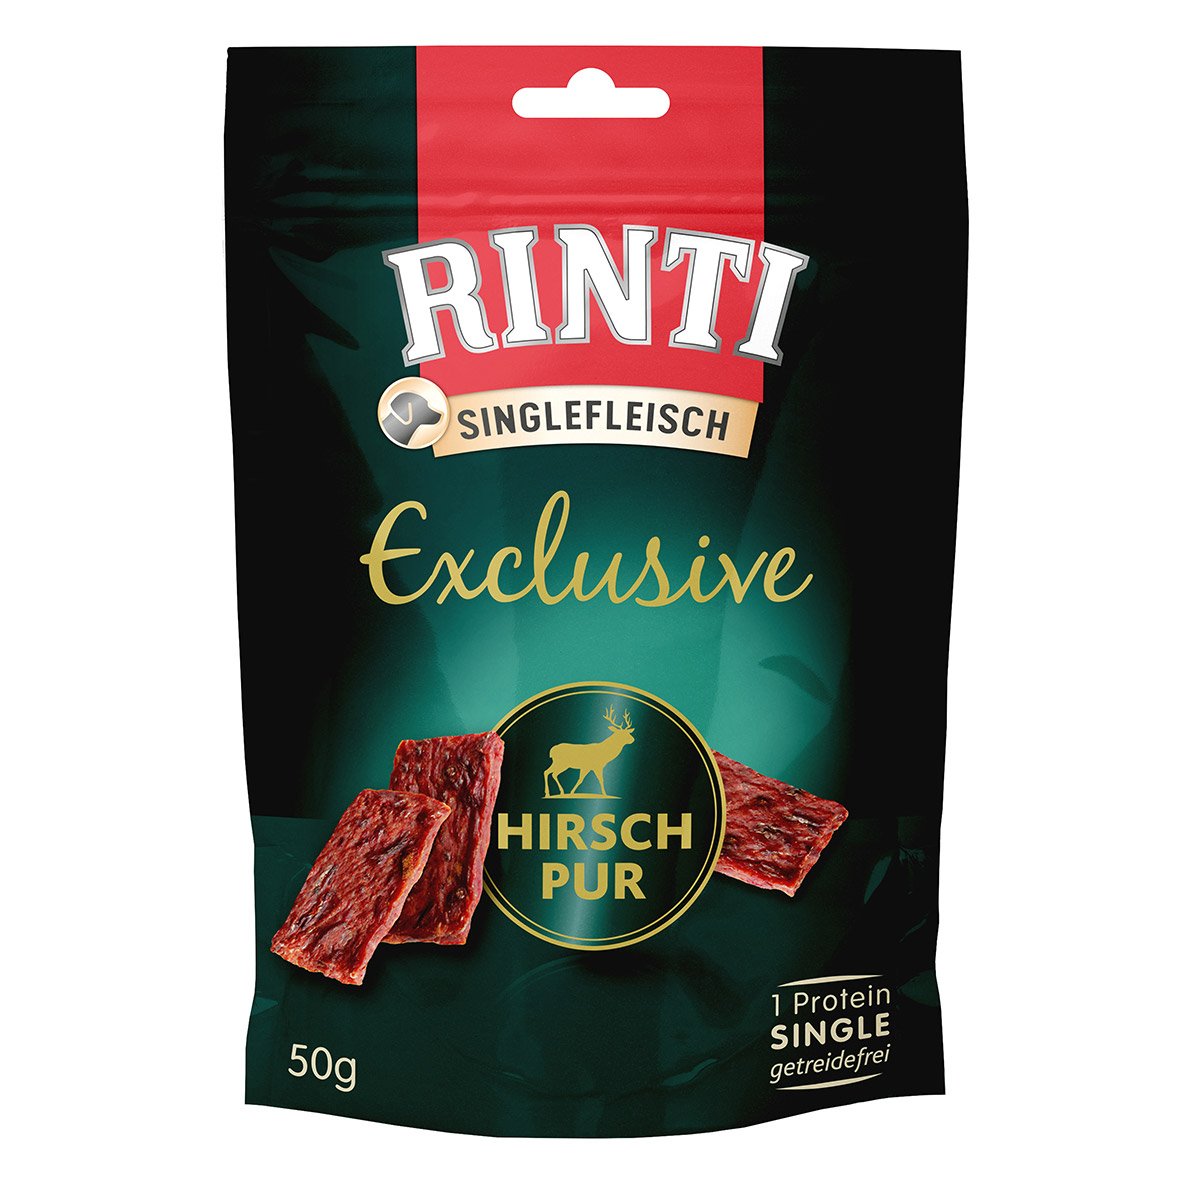 Rinti Singlefleisch Exclusive Snack Hirsch pur 6x50g von Rinti